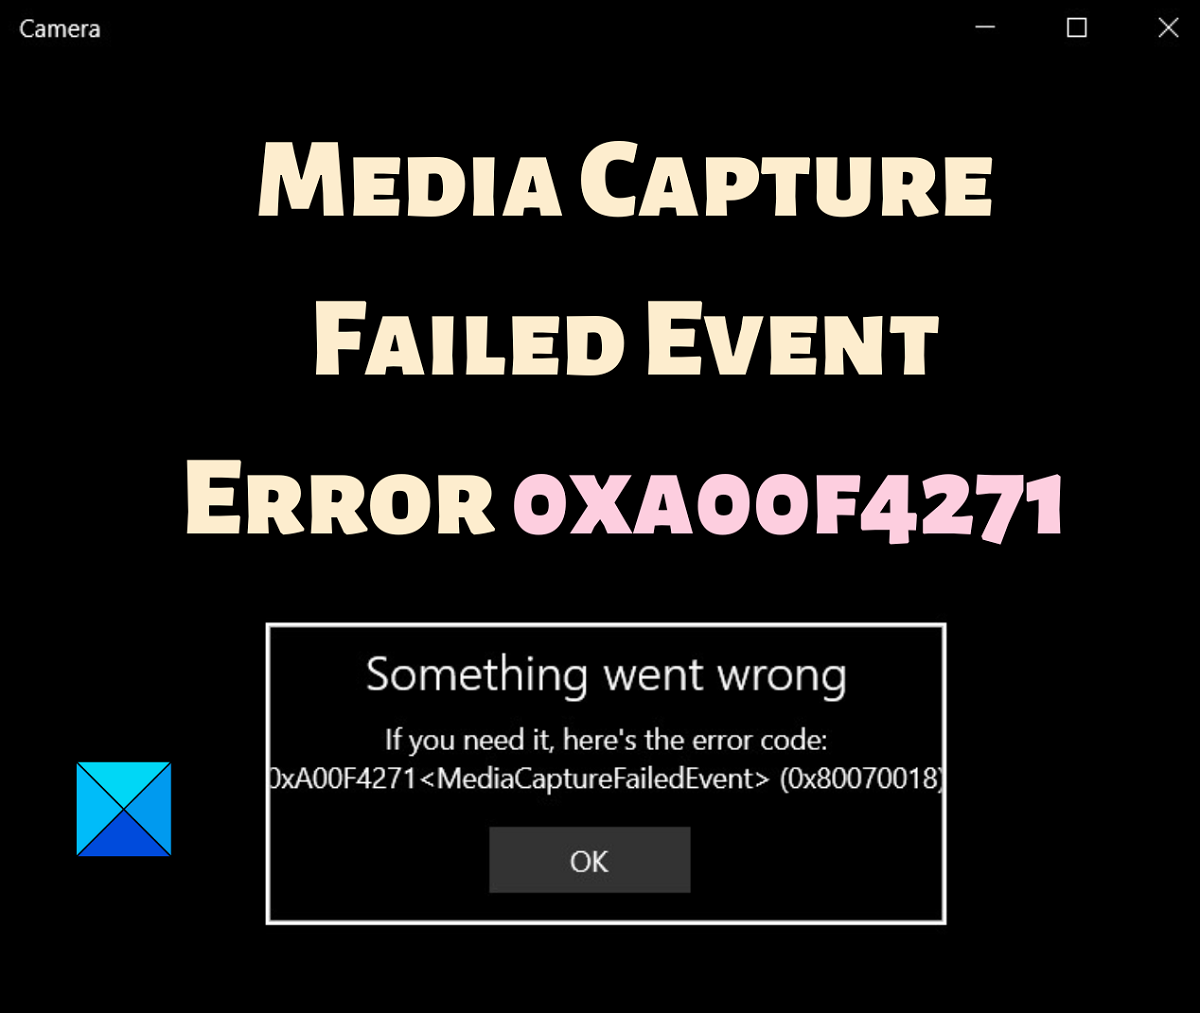 Error event